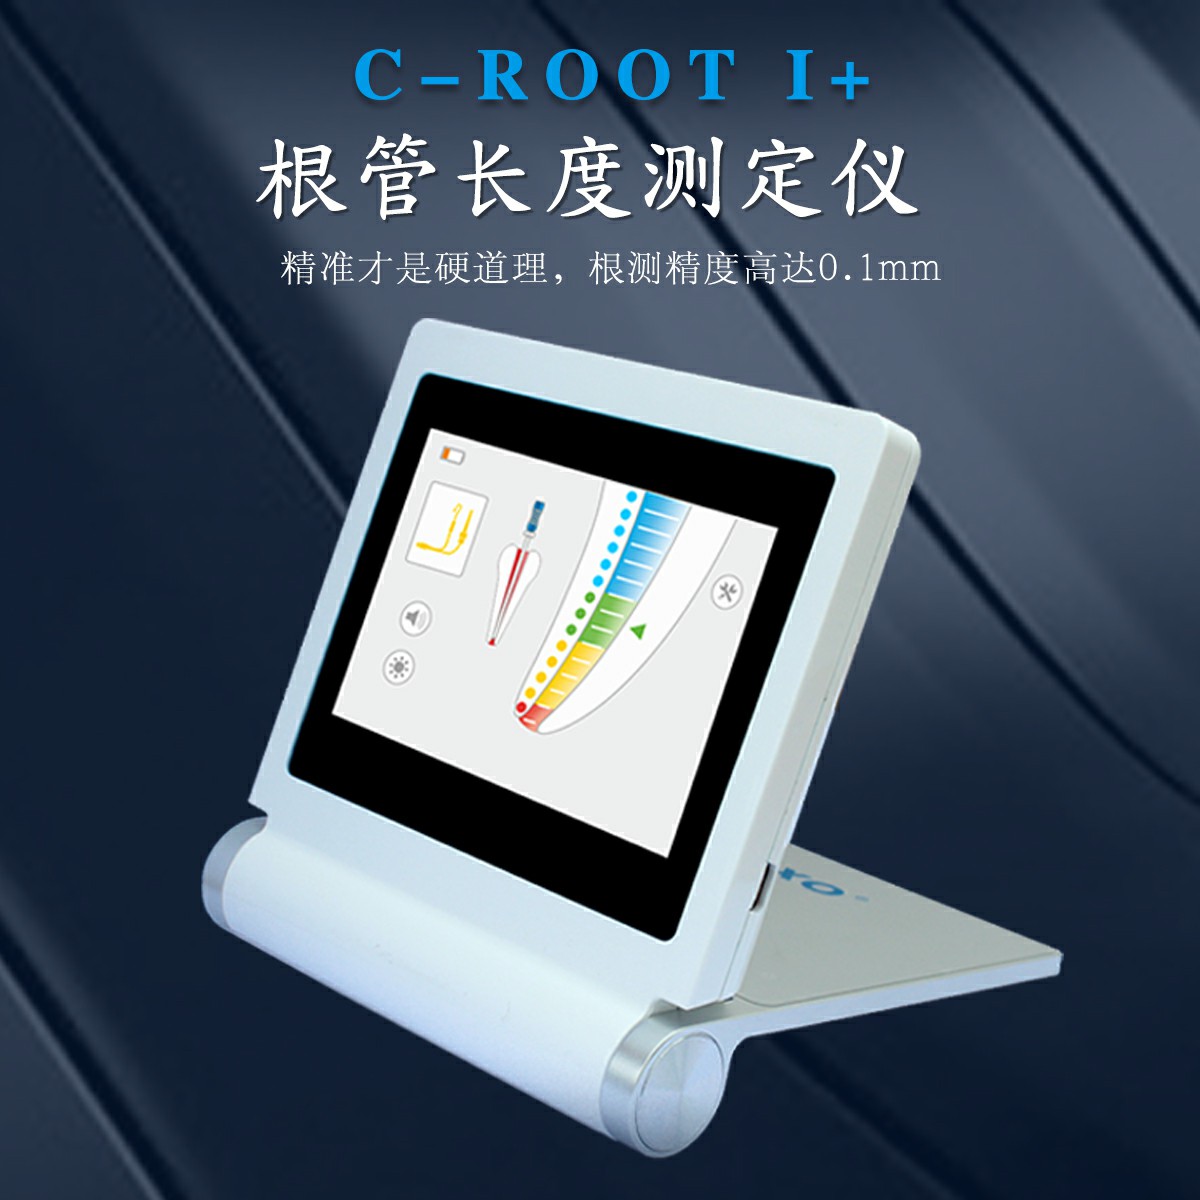 C-ROOT I+根管长度测定仪